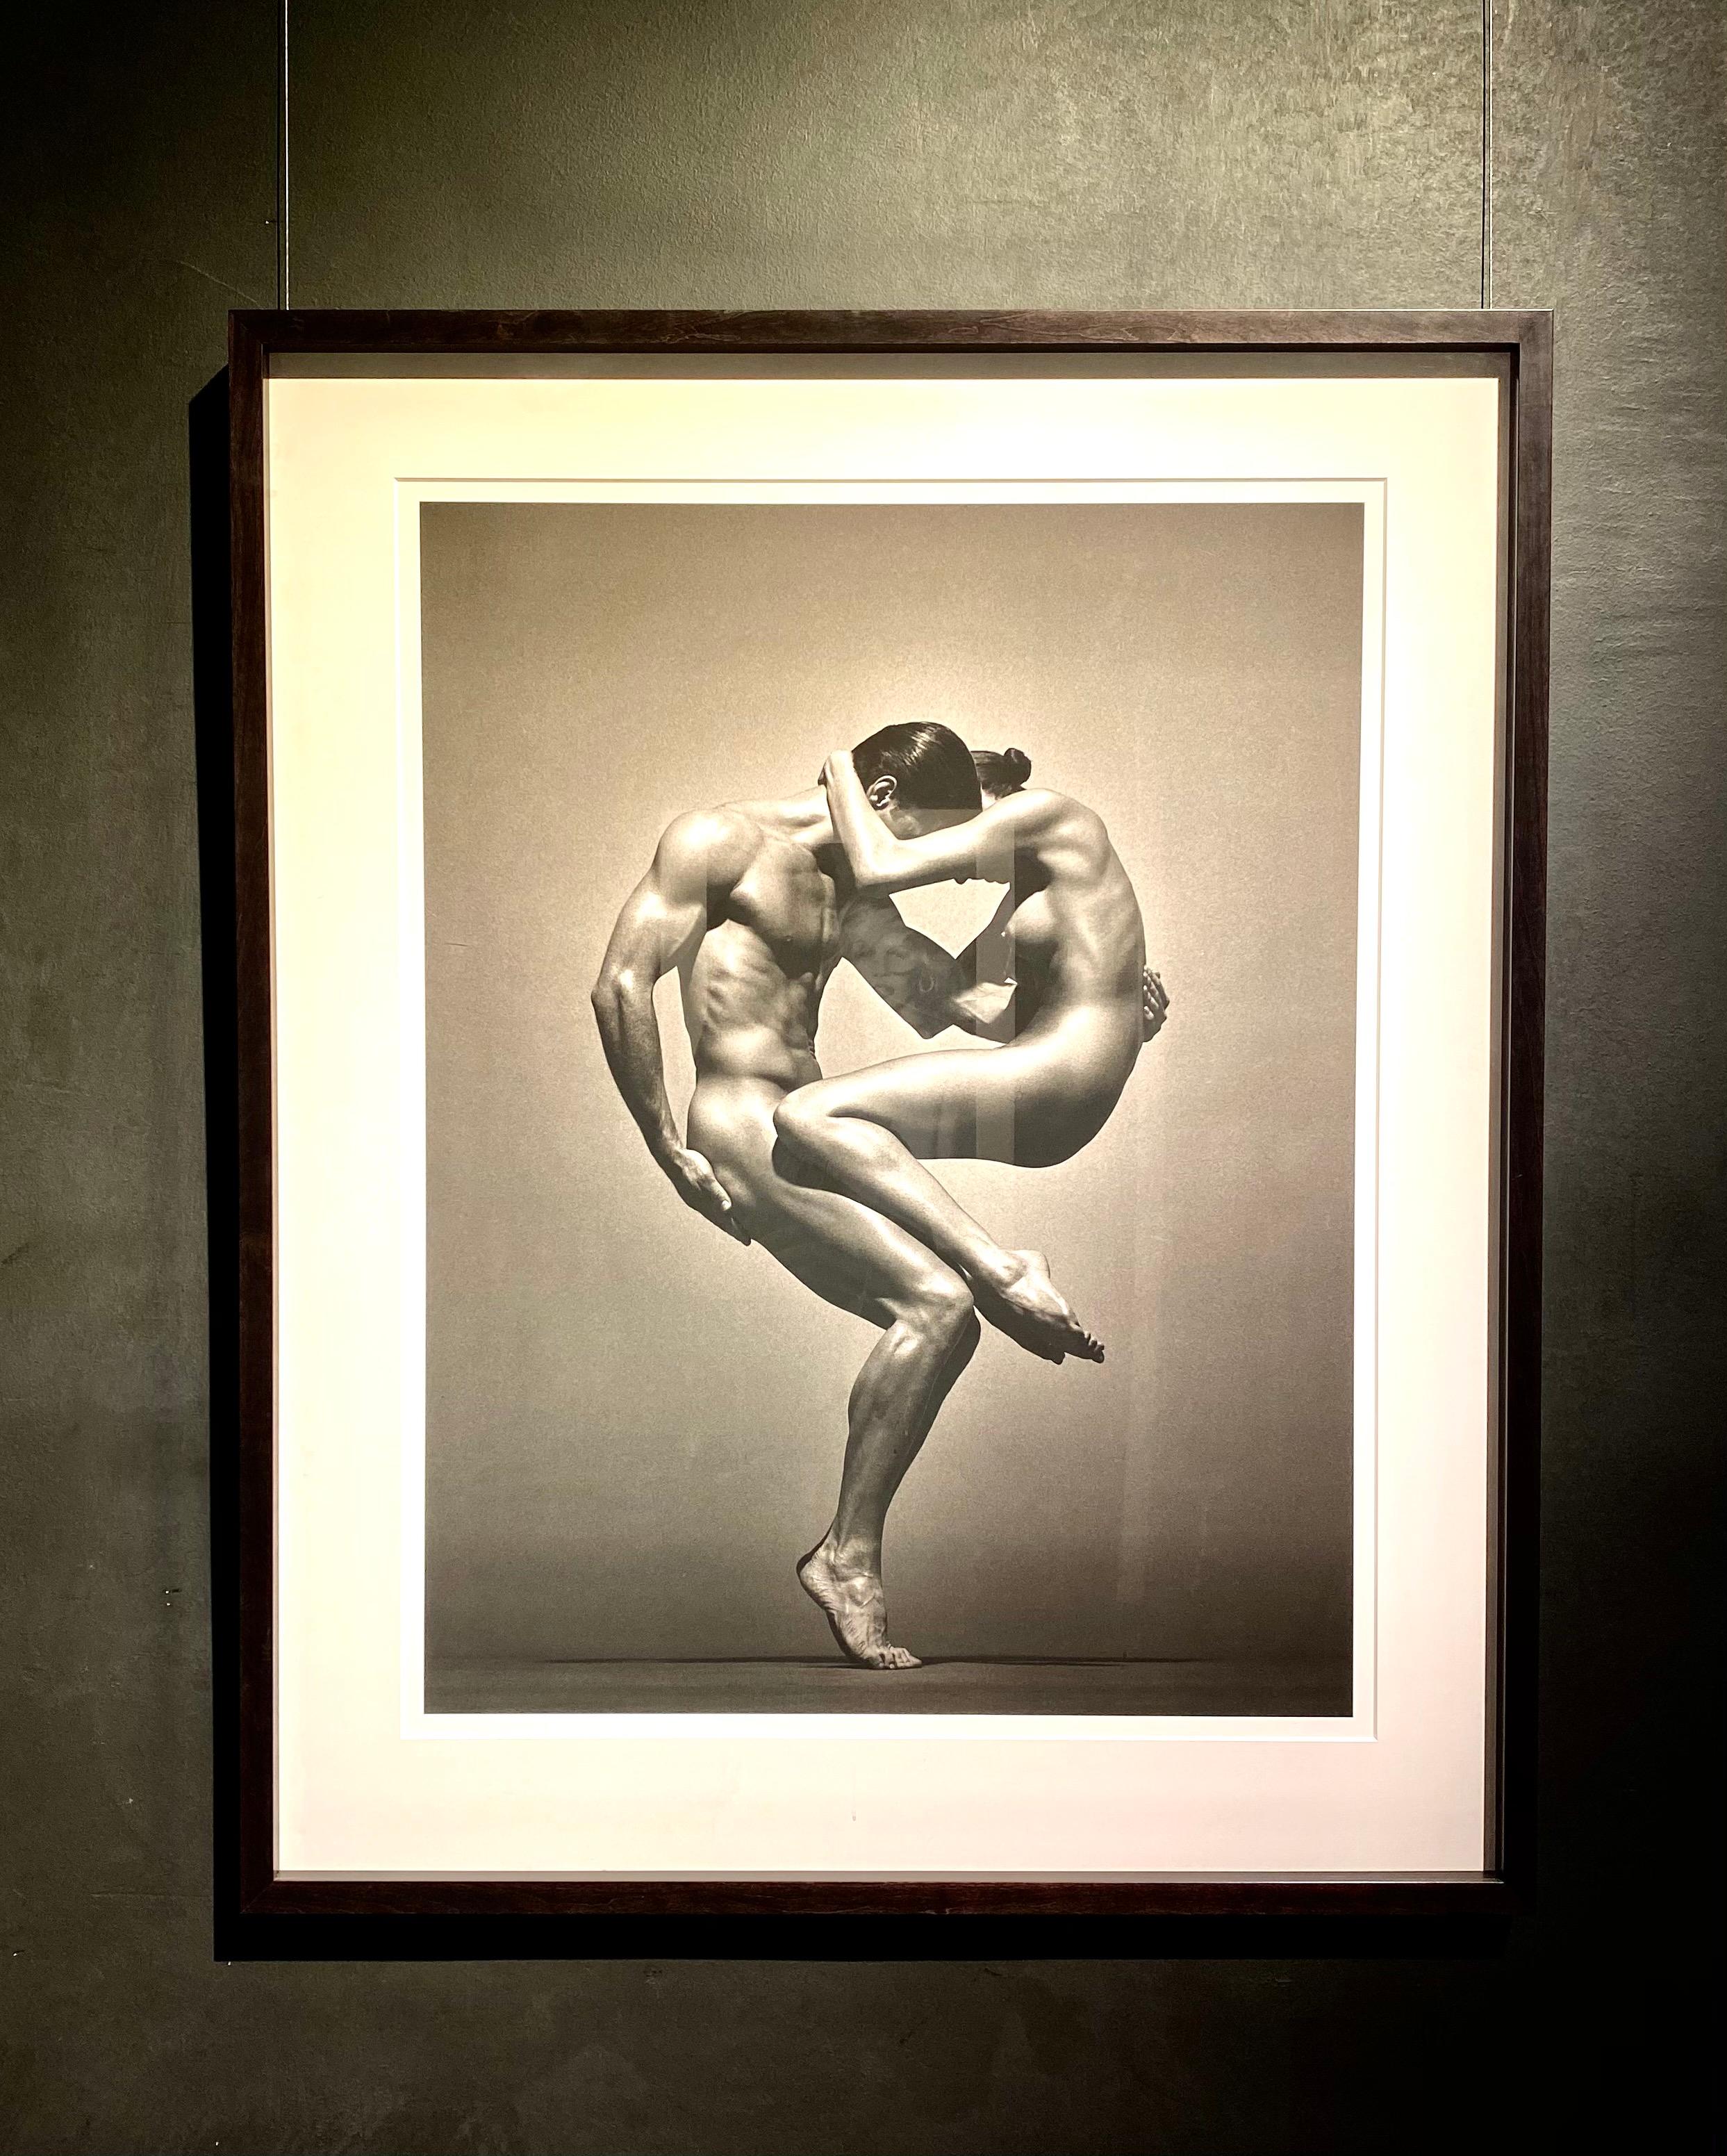 Sina&Anthony, Wien - Doppelakt in sportlicher Pose, Kunstfotografie, 1995 – Photograph von Andreas H. Bitesnich